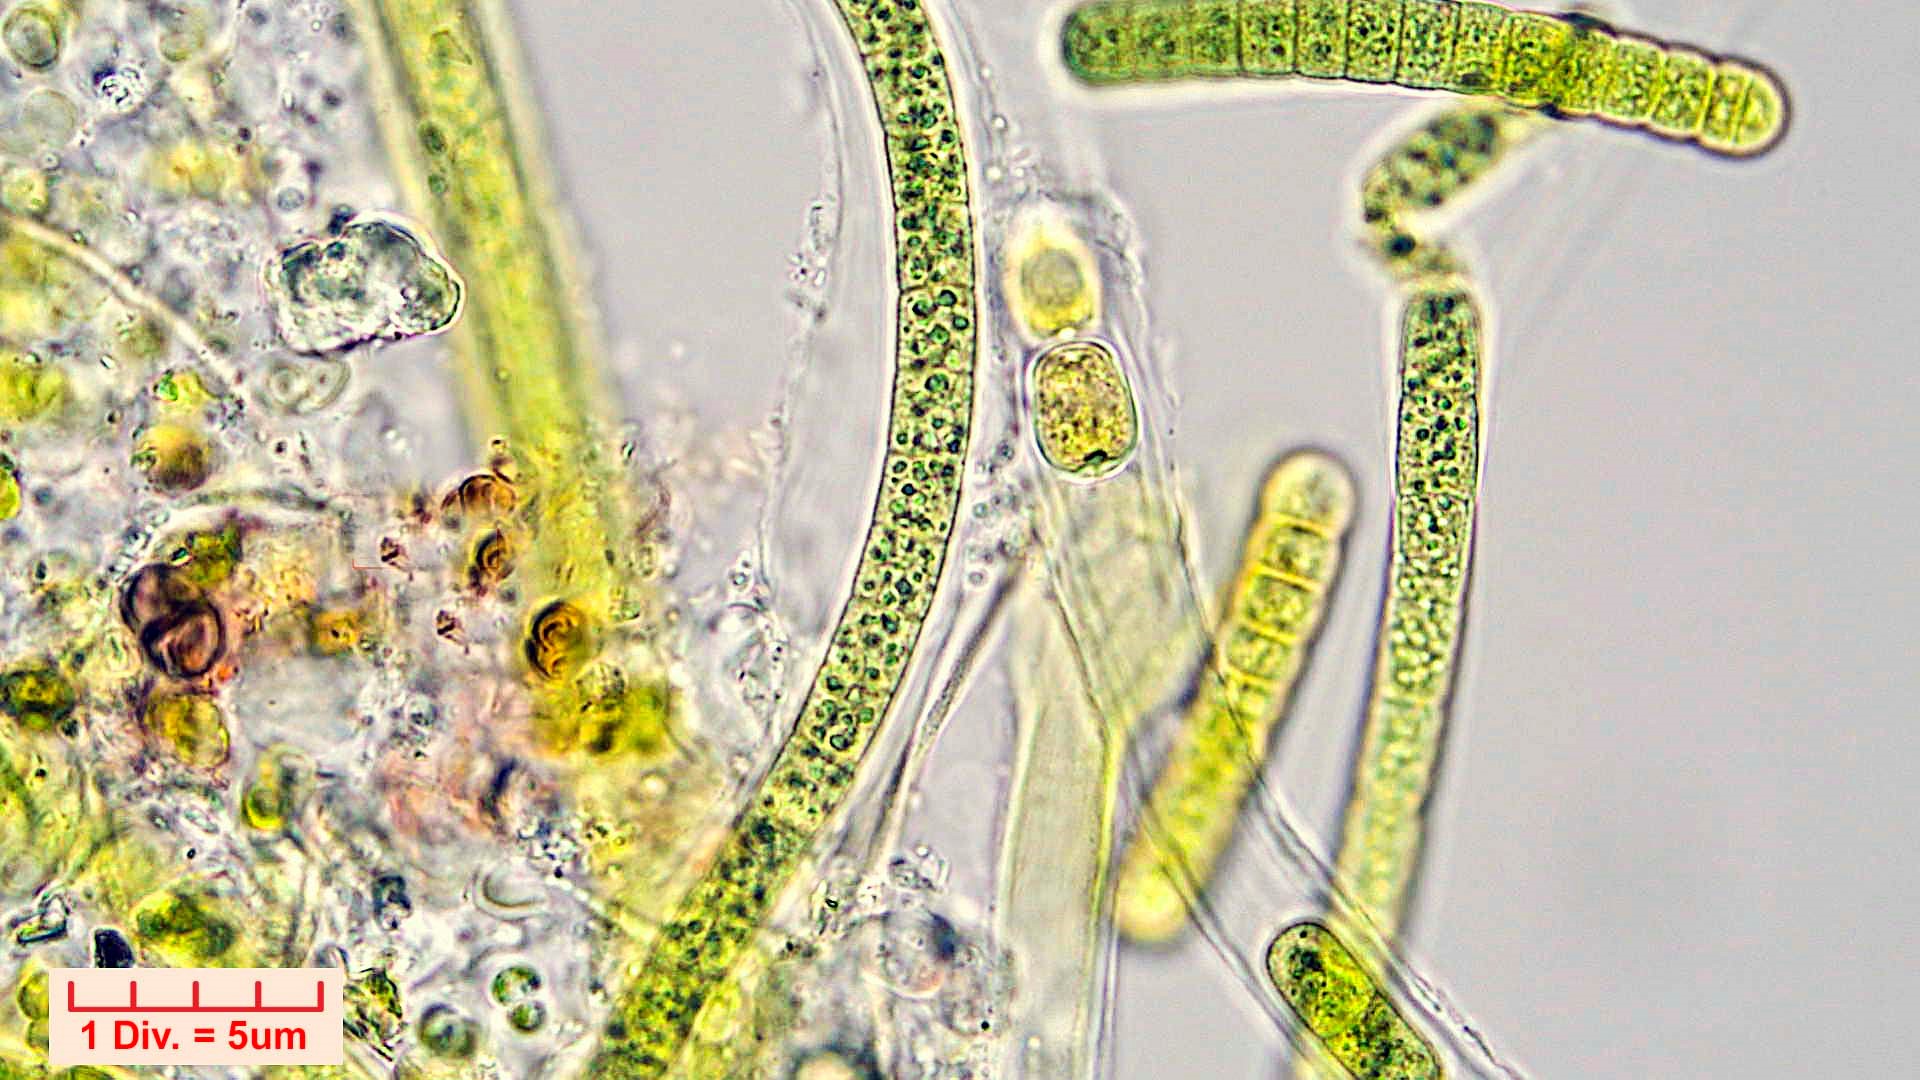 ././Cyanobacteria/Nostocales/Tolypothrichaceae/Tolypothrix/calcarata/tolypothrix-calcarata-320.jpg